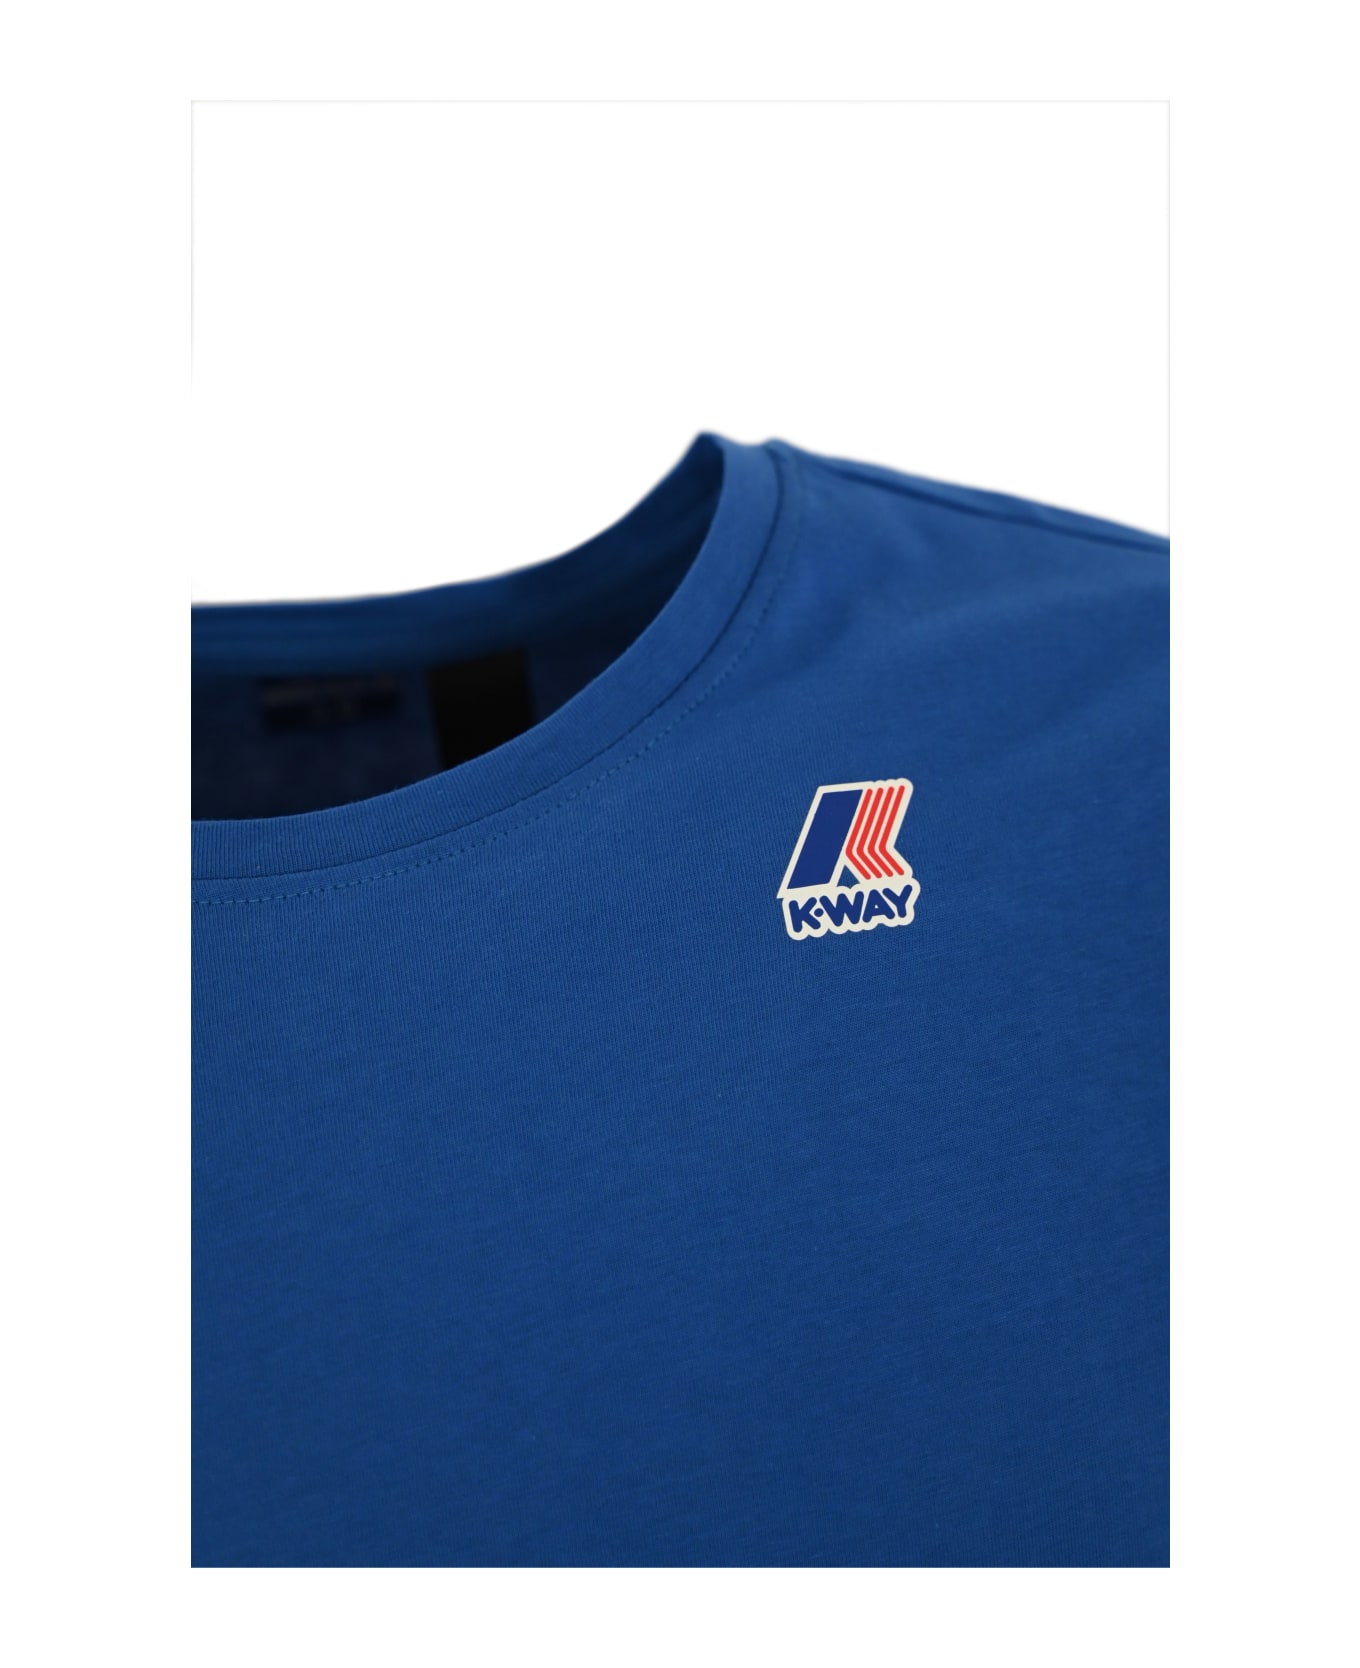 K-Way T-shirt With Logo - Blue royal marine シャツ